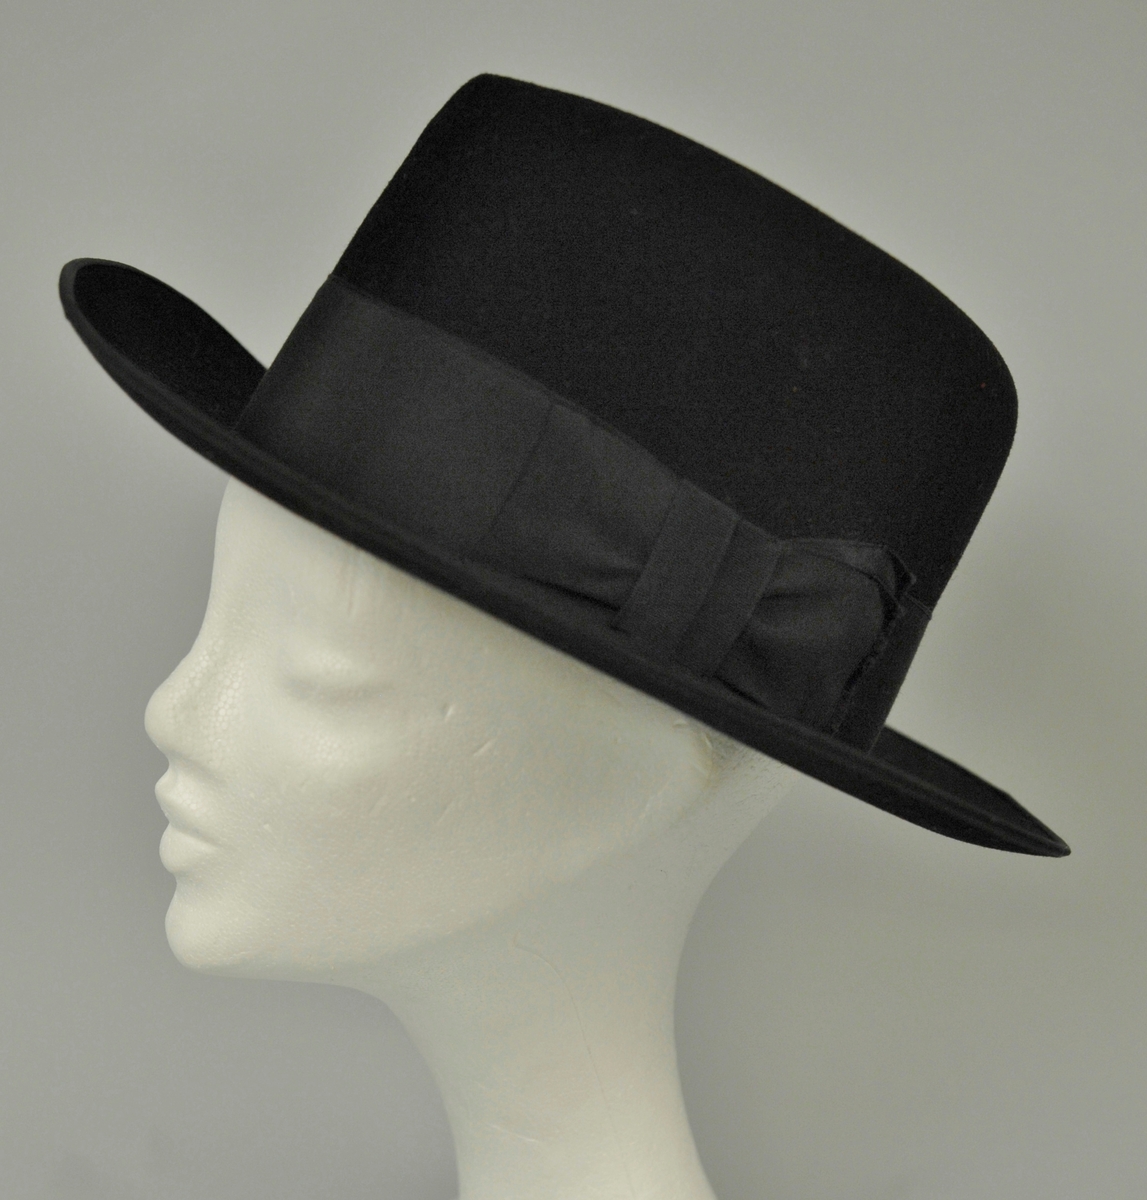 Hatten har høy pull. Bredt sort ripsbånd rundt pullen. Lyst brunt skinn i svettebrem innvendig. Lite brukt. "Penhatt". 